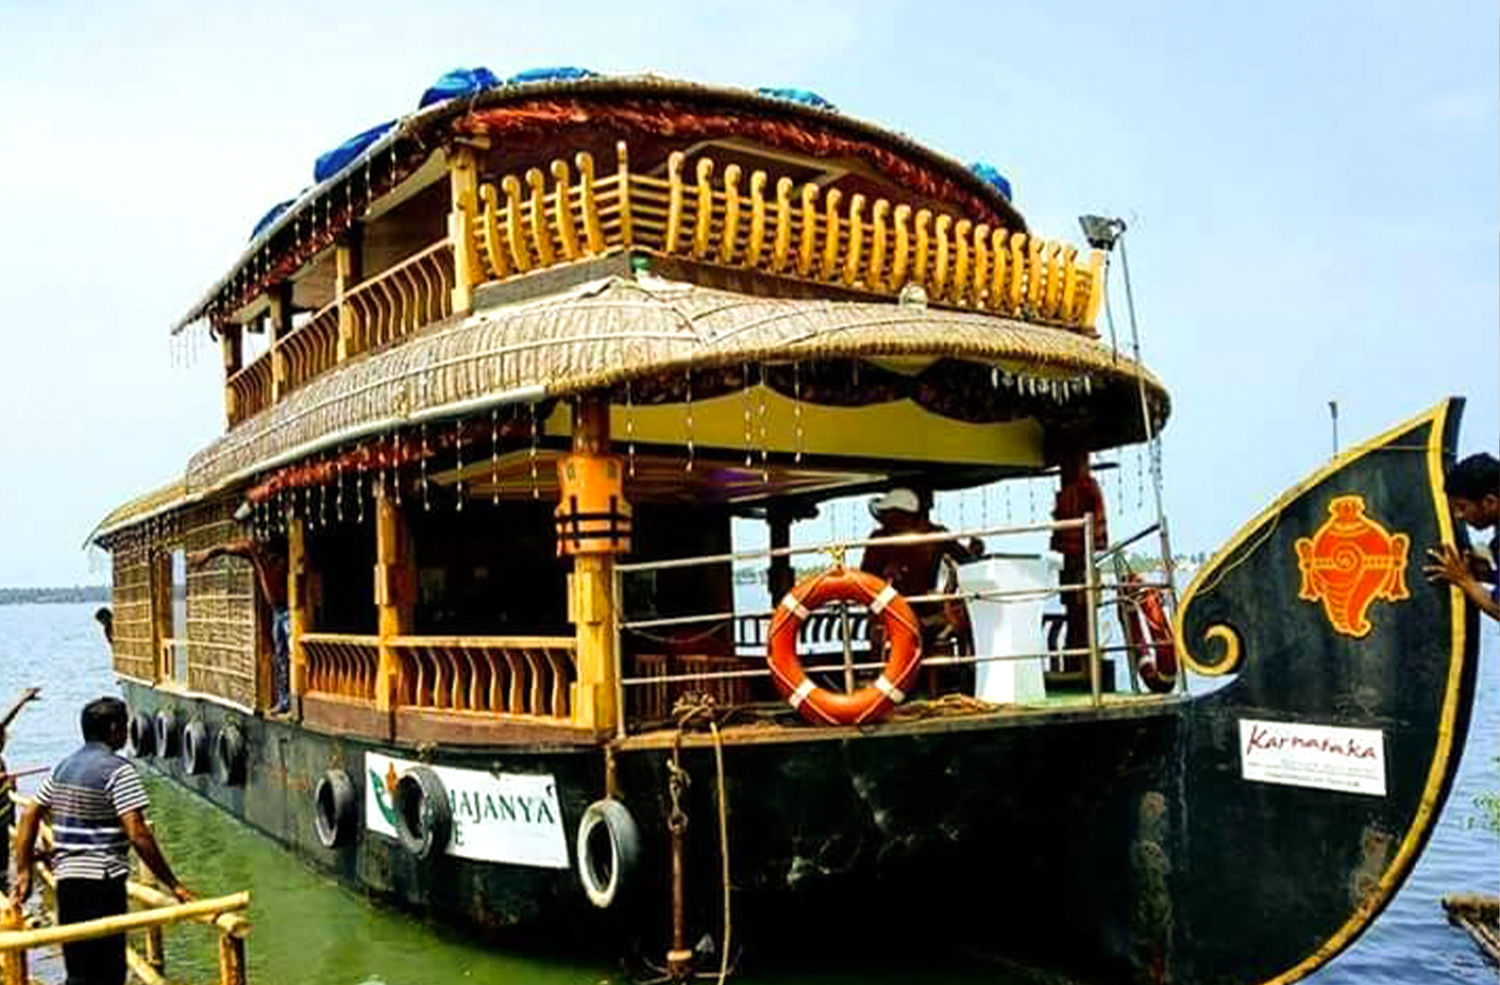 Panchajanya Houseboat